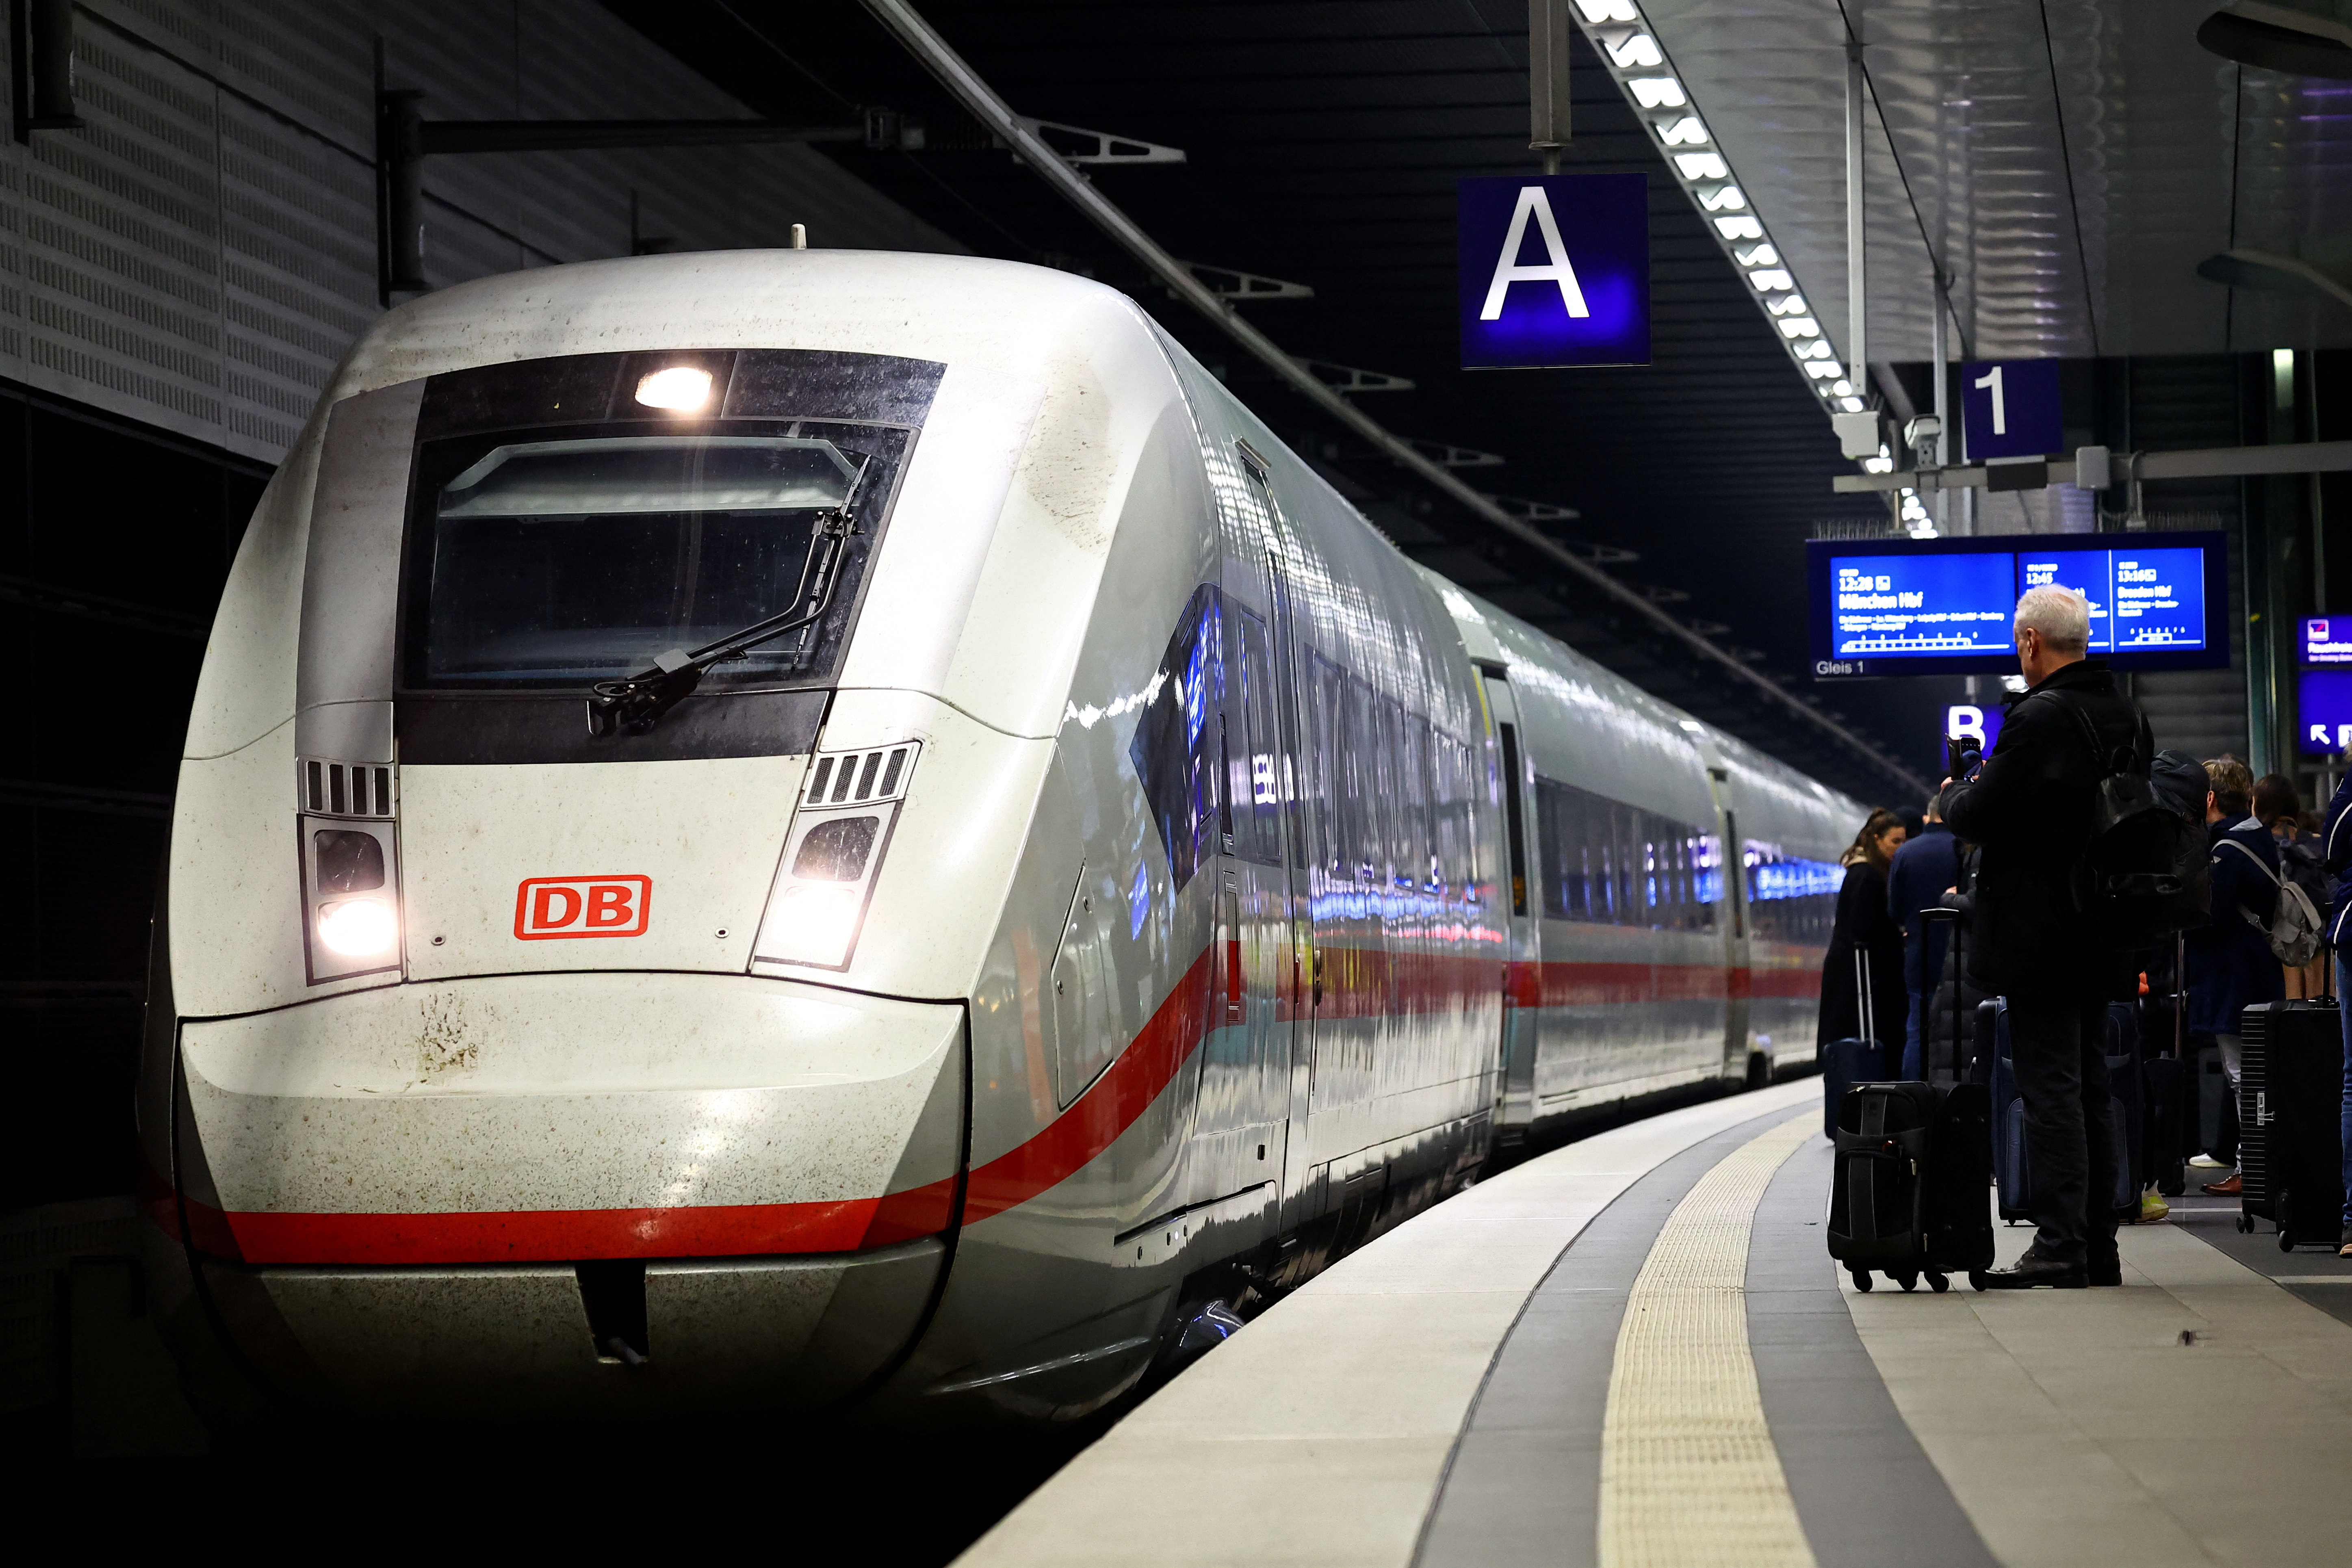 ドイツ、鉄道・空港スト再開で数百万人に影響か